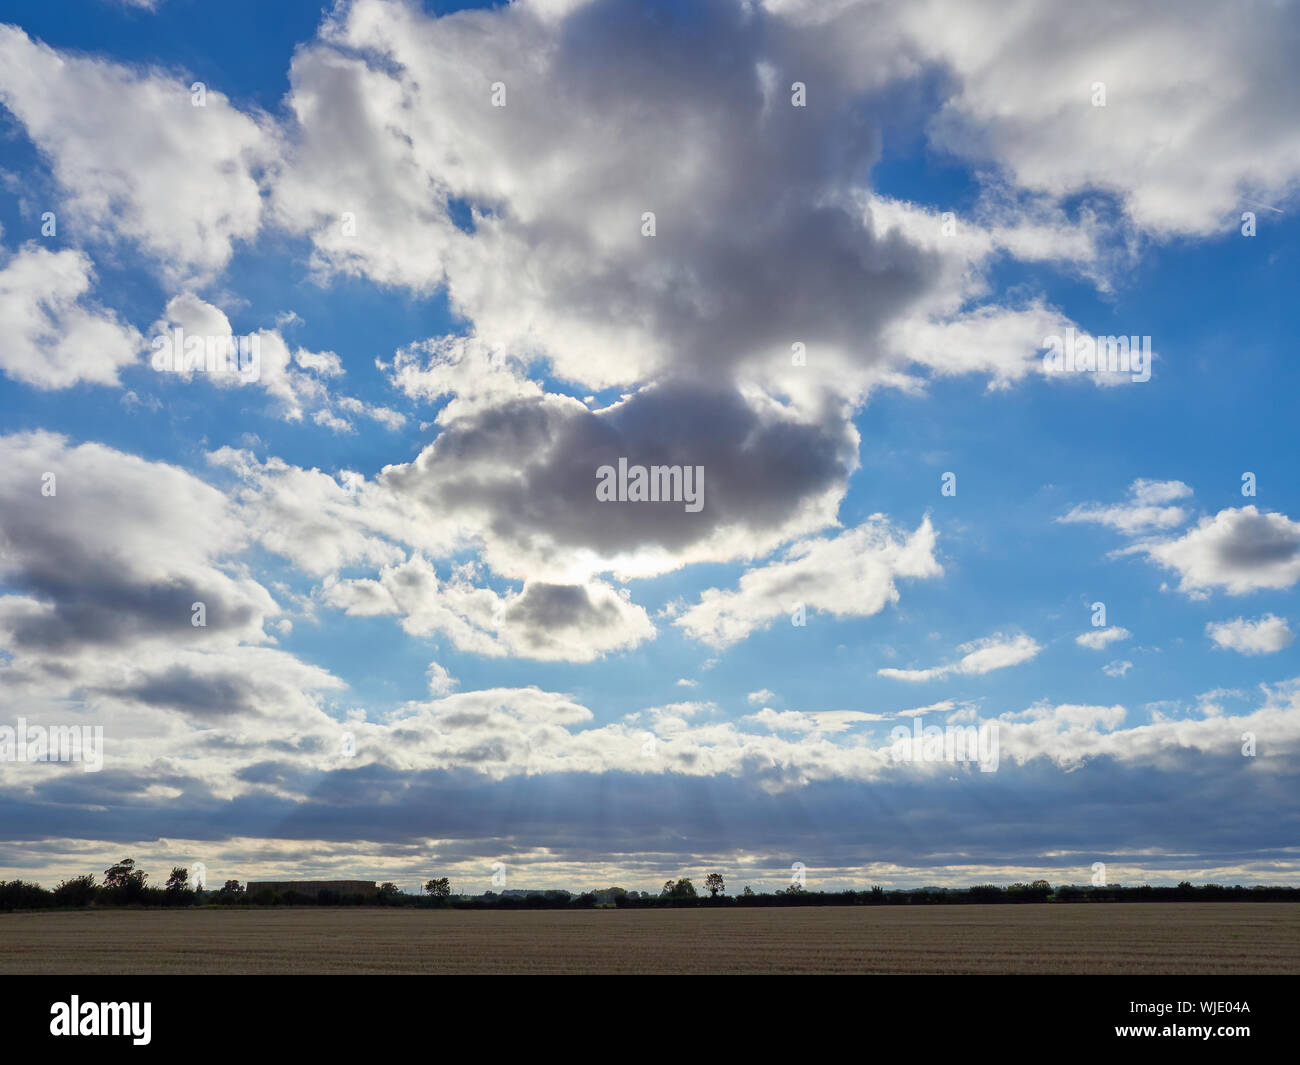 Cumulus Wolken gegen eine helle blaue Hintergrundbeleuchtung Sommer Abend Himmel mit Sonnenstrahlen auch bekannt als Sonnenstrahl scheint durch unten Stockfoto